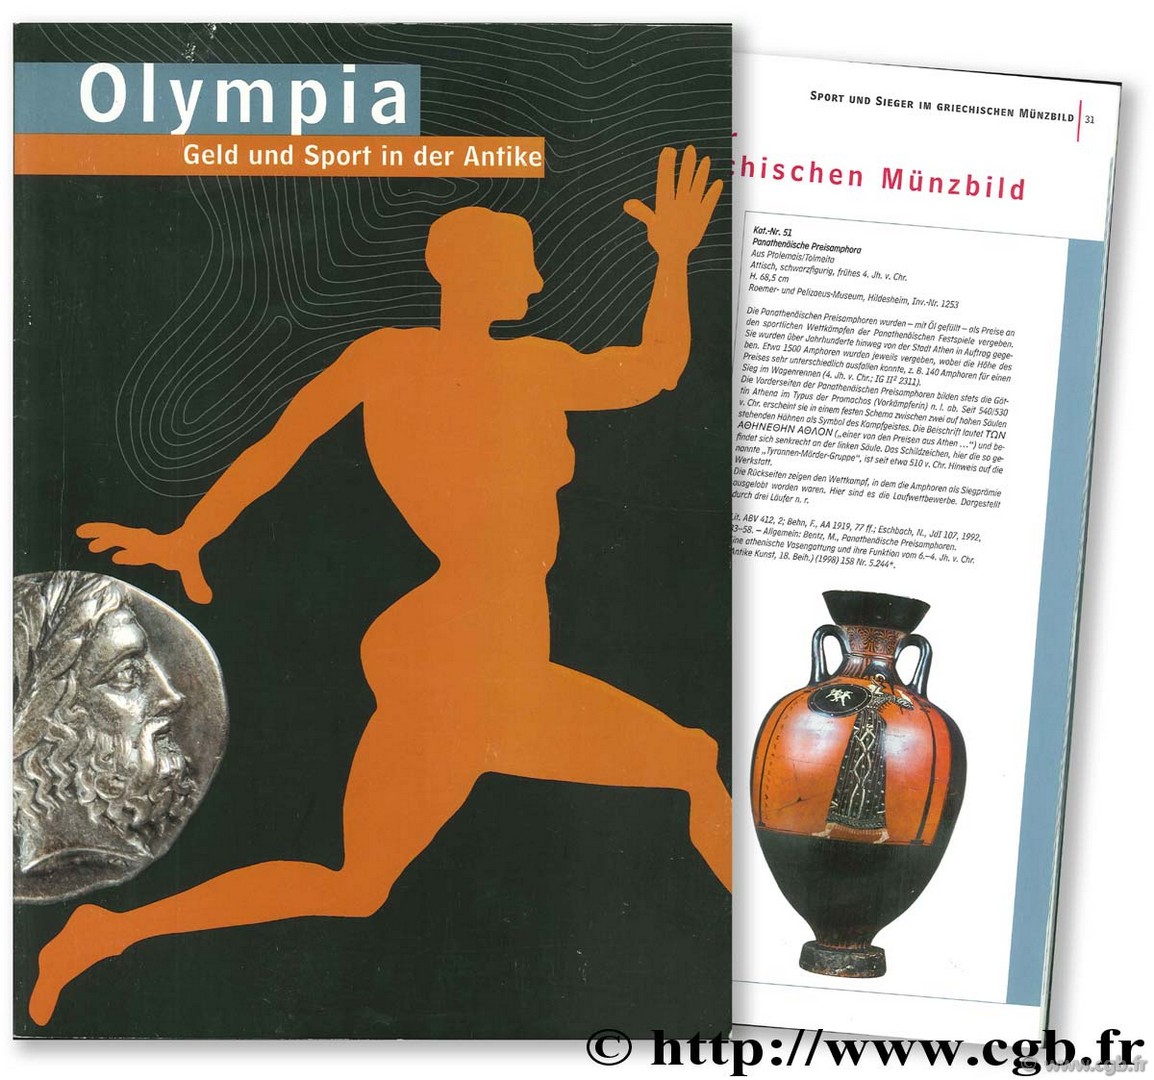 Olympia Geld und Sport in der Antike 